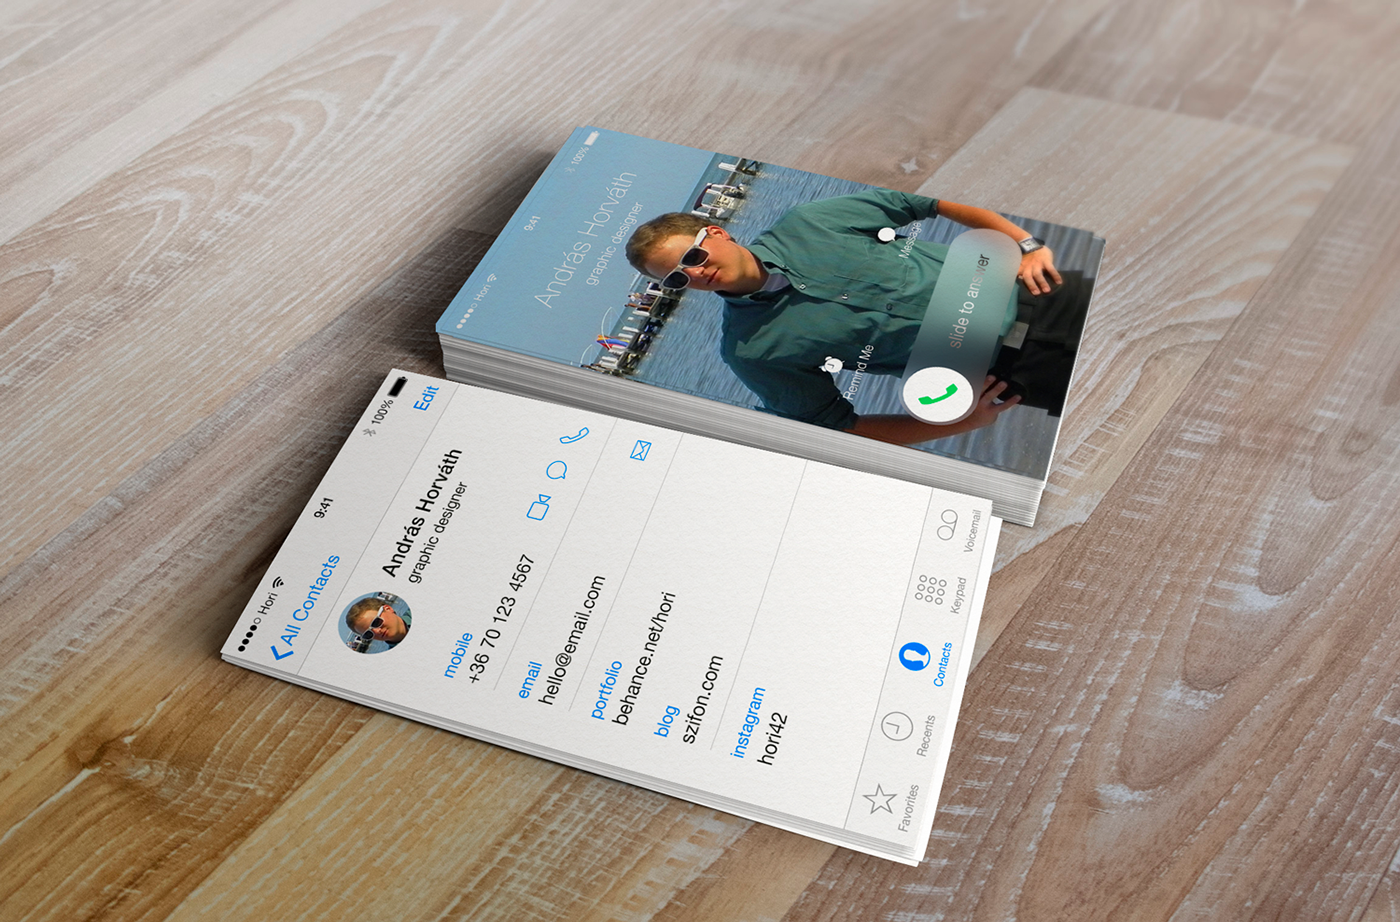 iphone ios iOS 7 apple jony ive flat design business card Name card Steve Jobs